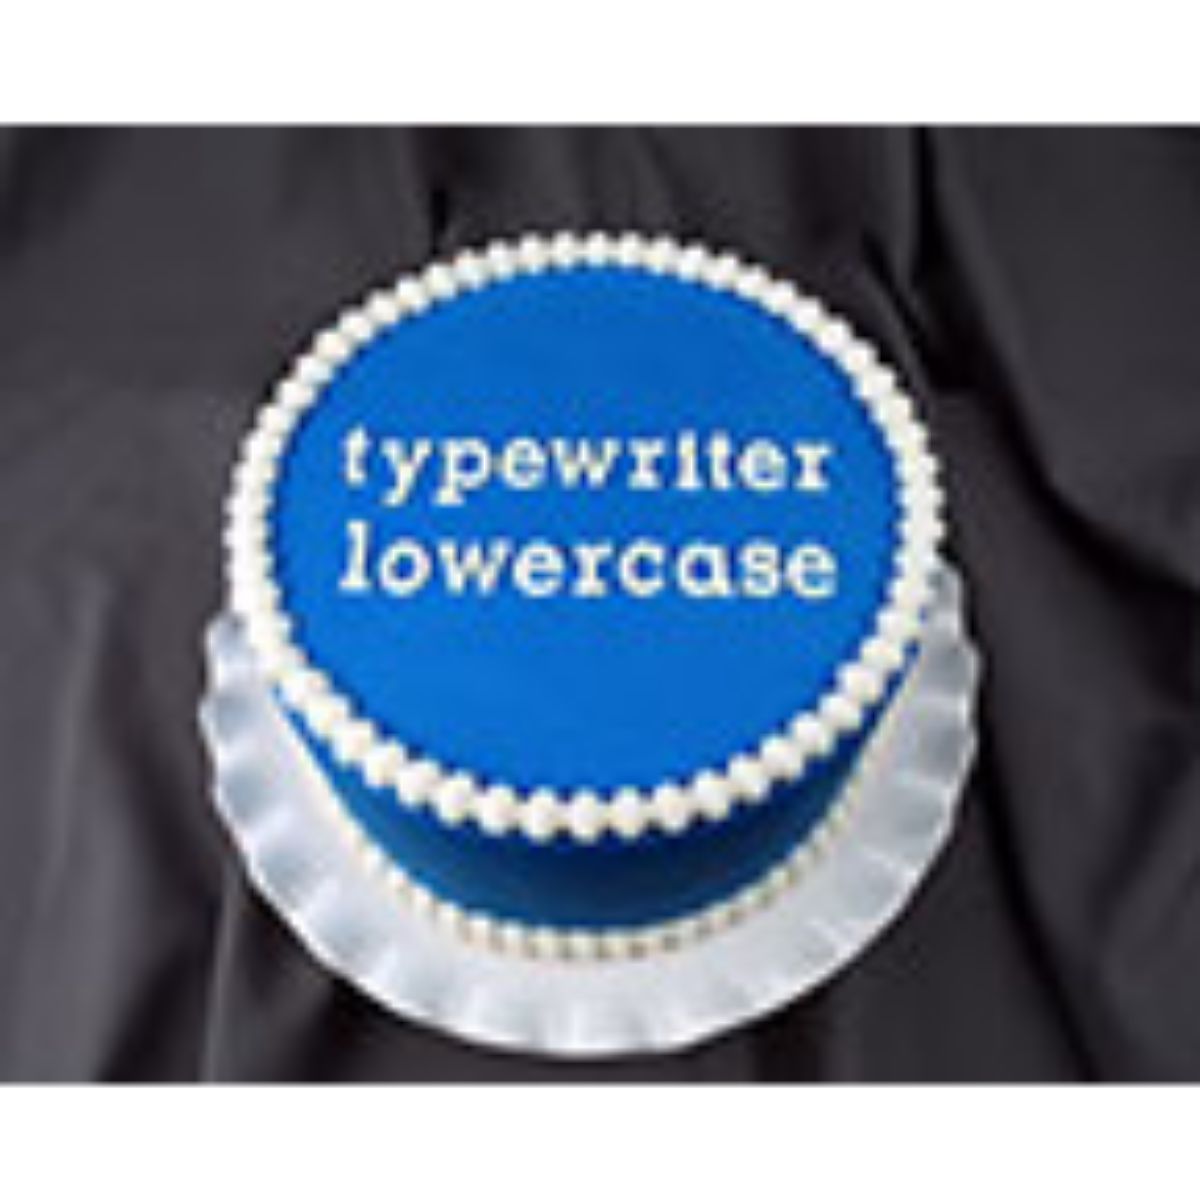 Typewriter Lowercase Flexabet™ Mold - Bake Supply Plus